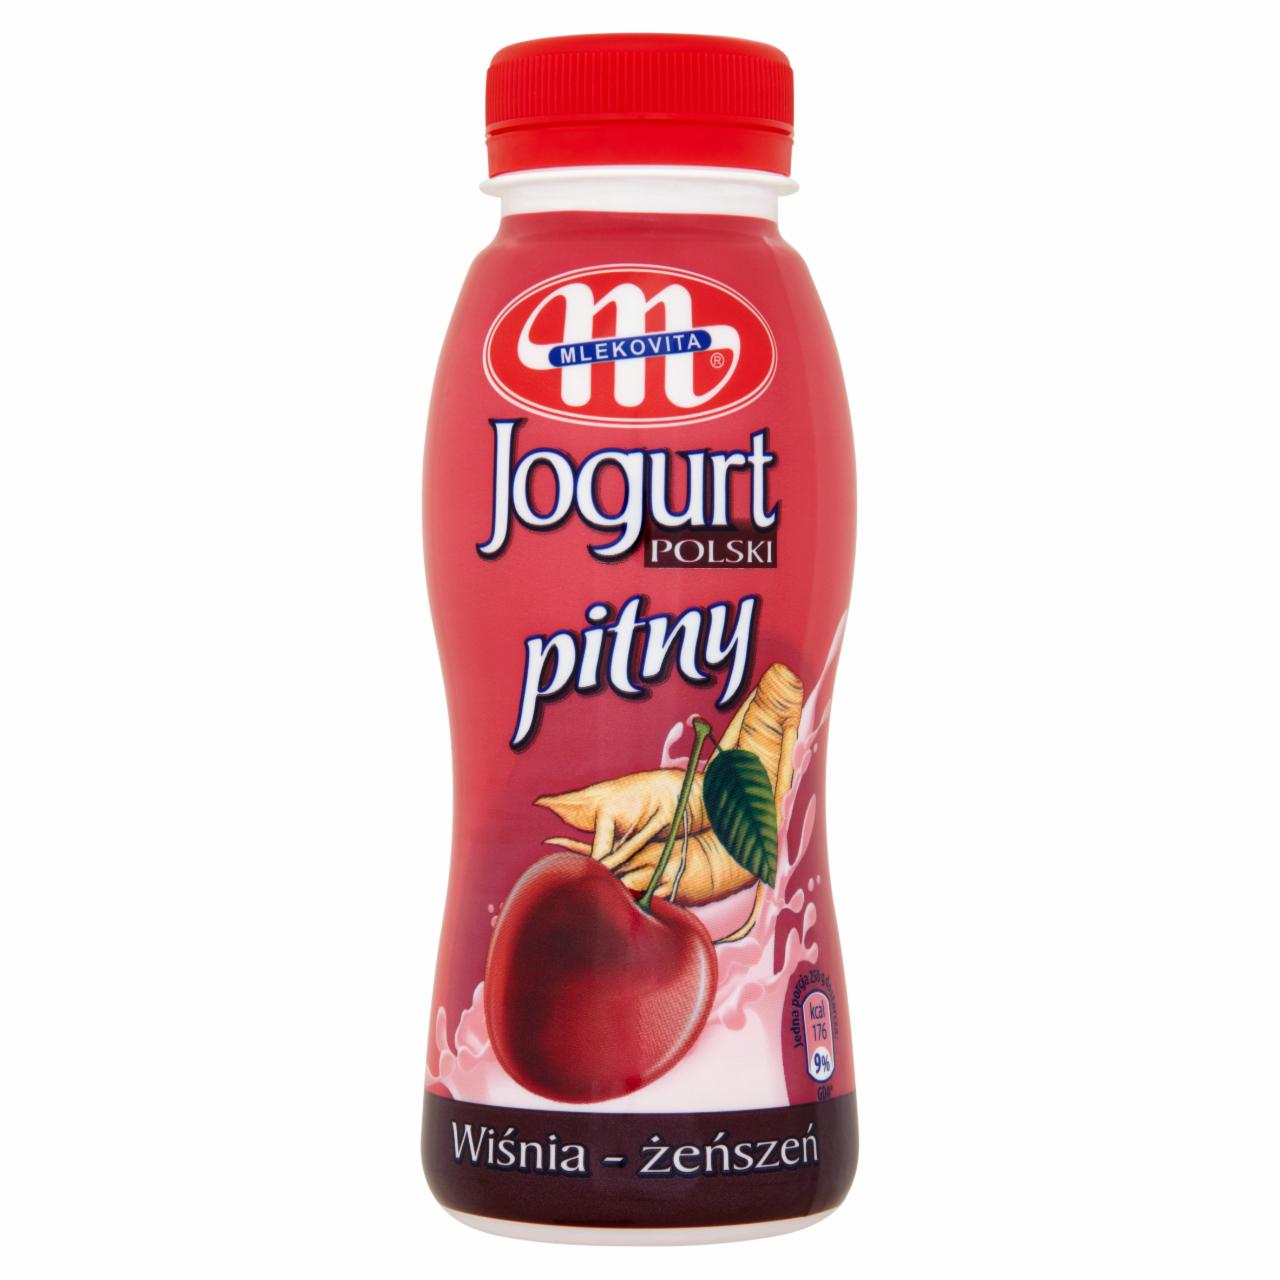 Zdjęcia - Mlekovita Jogurt Polski pitny wiśnia-żeńszeń 250 g